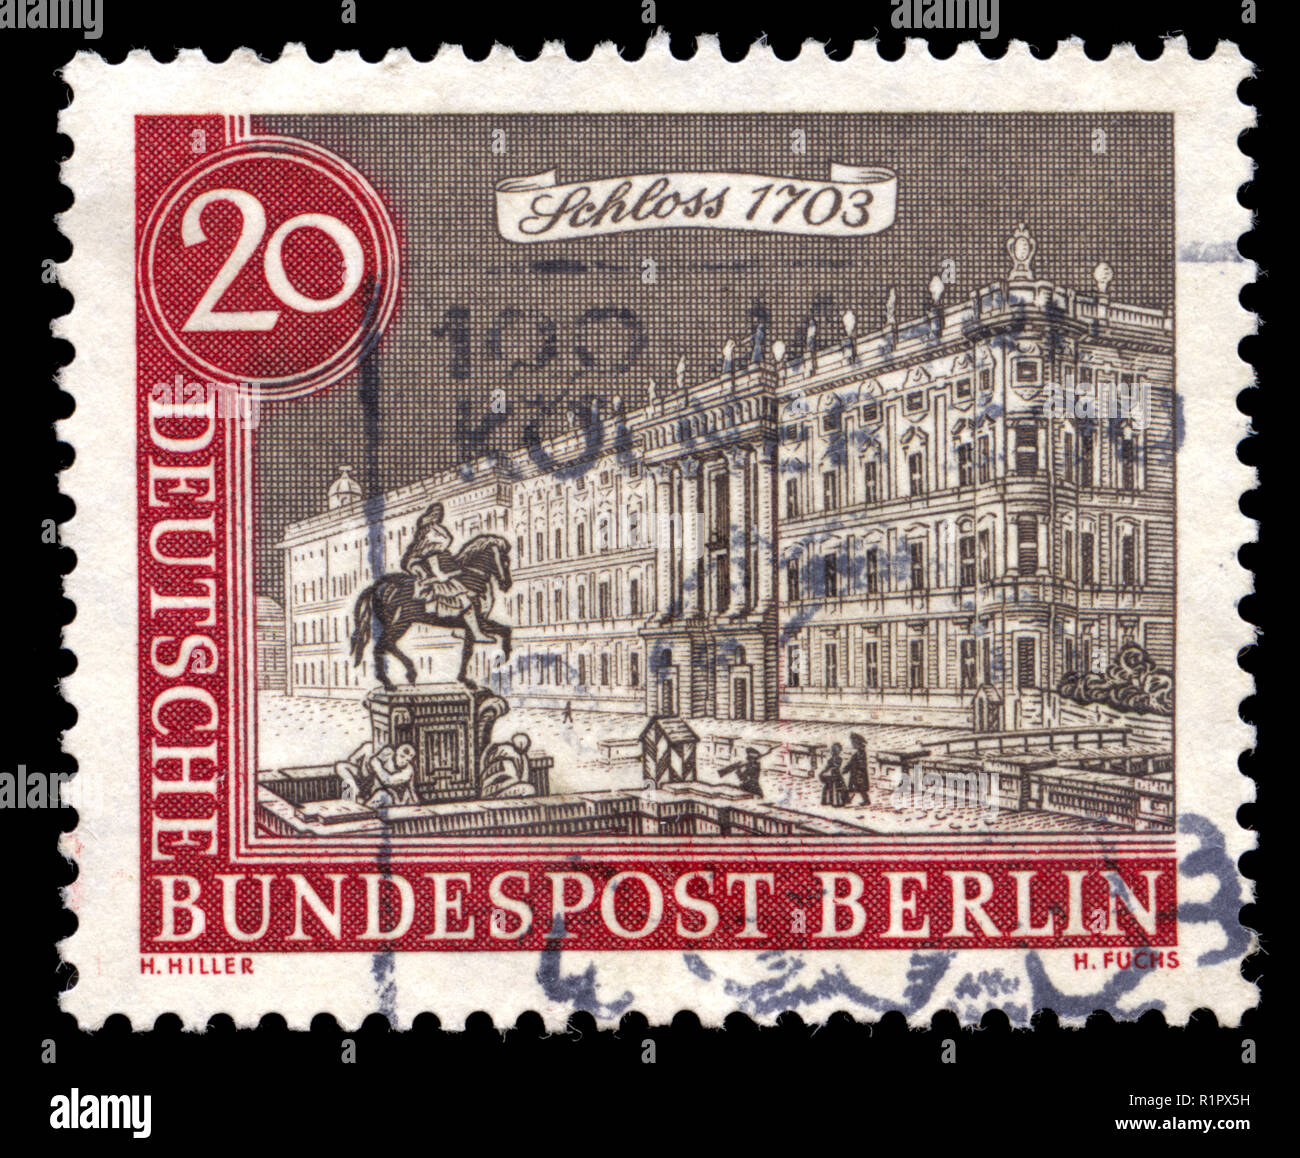 Deutsche bundespost stamp immagini e fotografie stock ad alta risoluzione -  Alamy